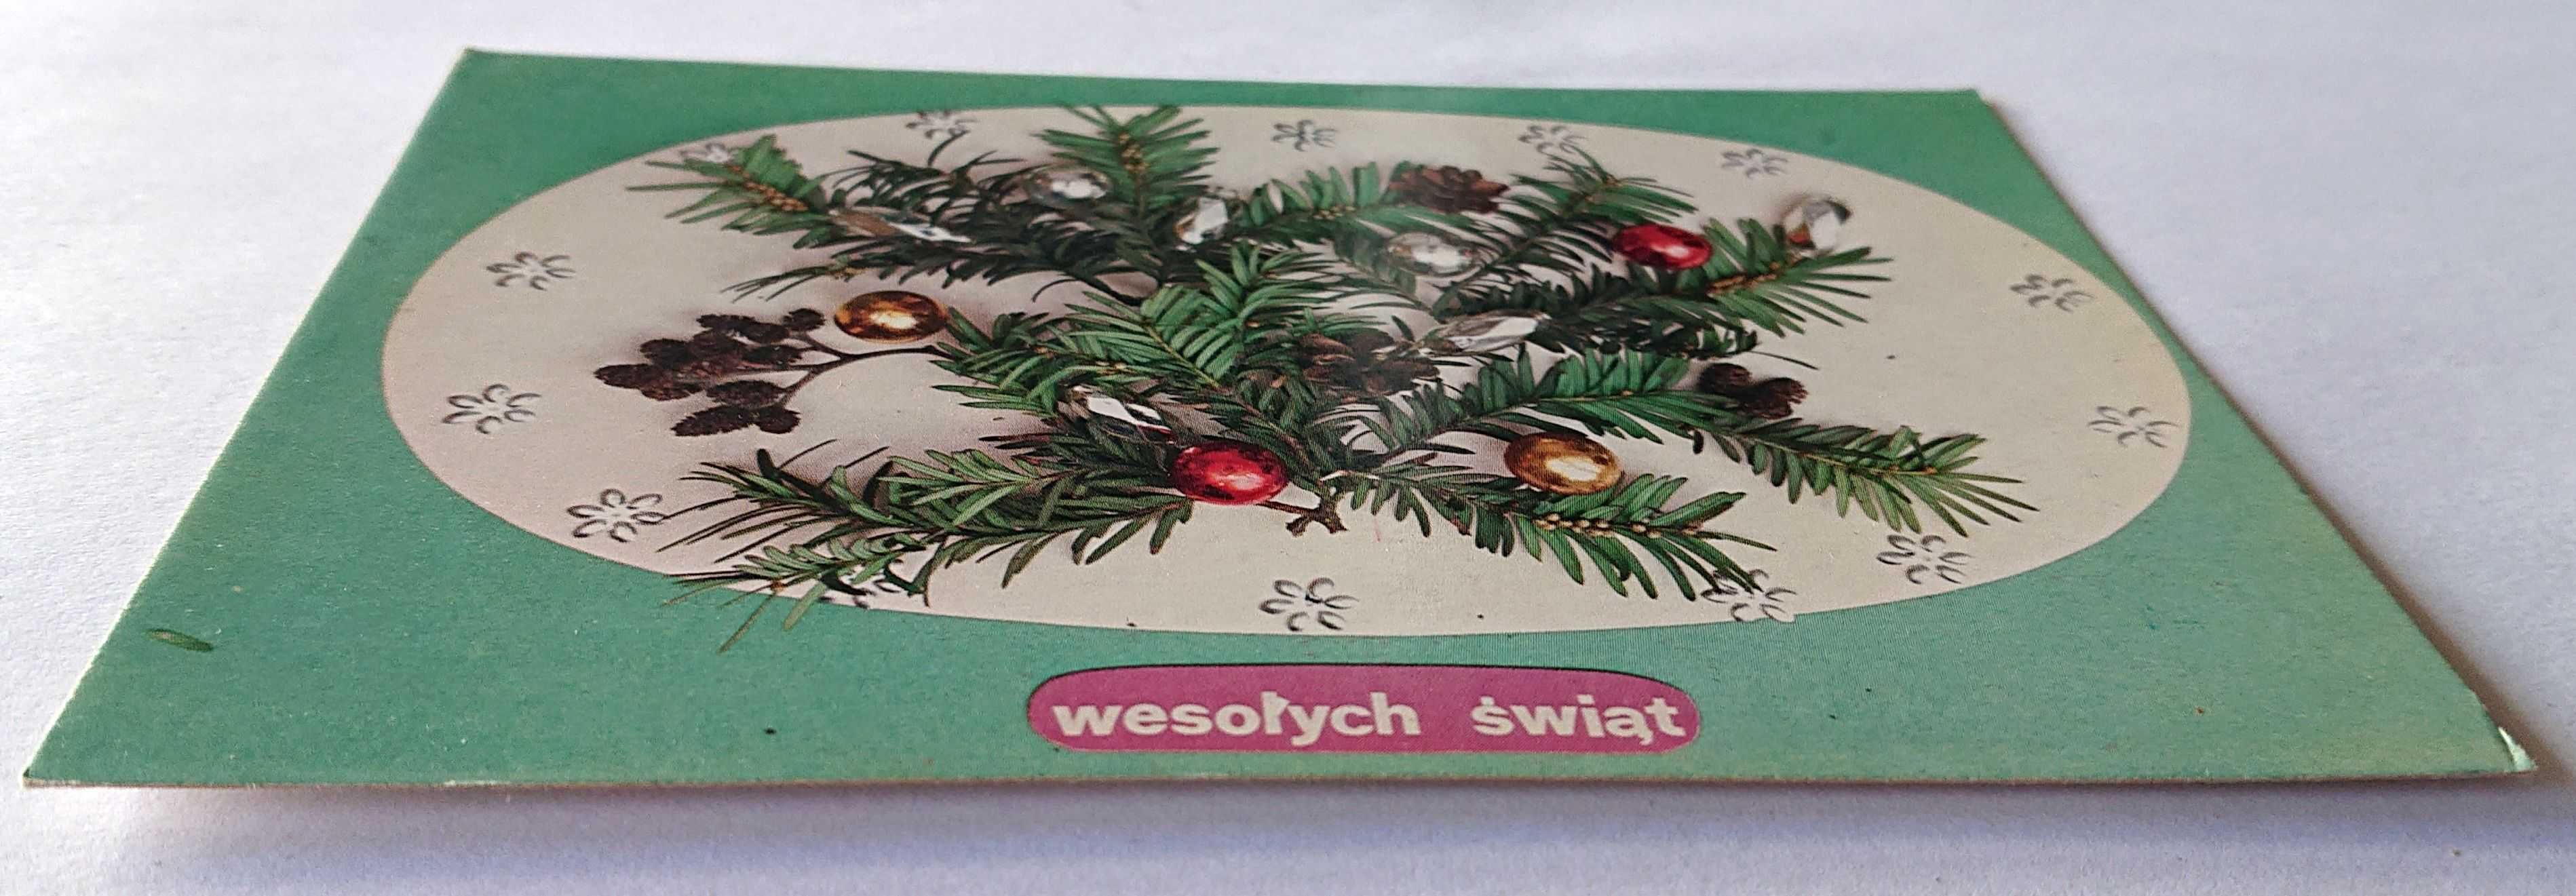 Kartka pocztowa - Wesołych Świąt - KAW RUCH - czysta - 1978 r. - Nr 22